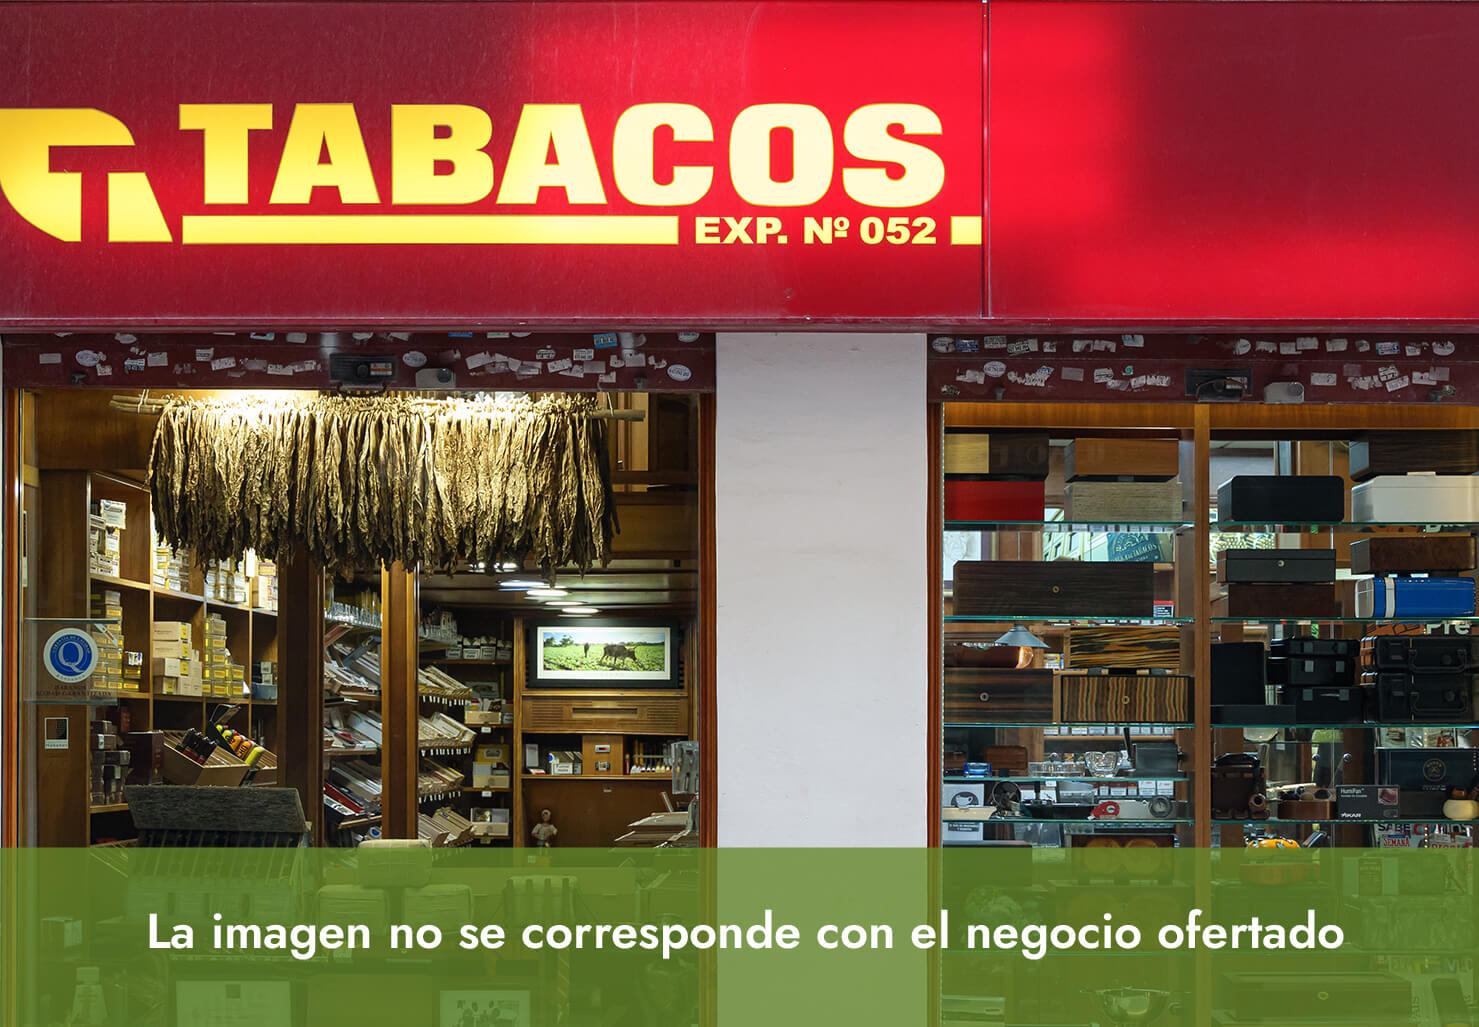 Lotoestanc, venta Expendeduría de Tabaco y Timbre en población costera de la Vega Baja